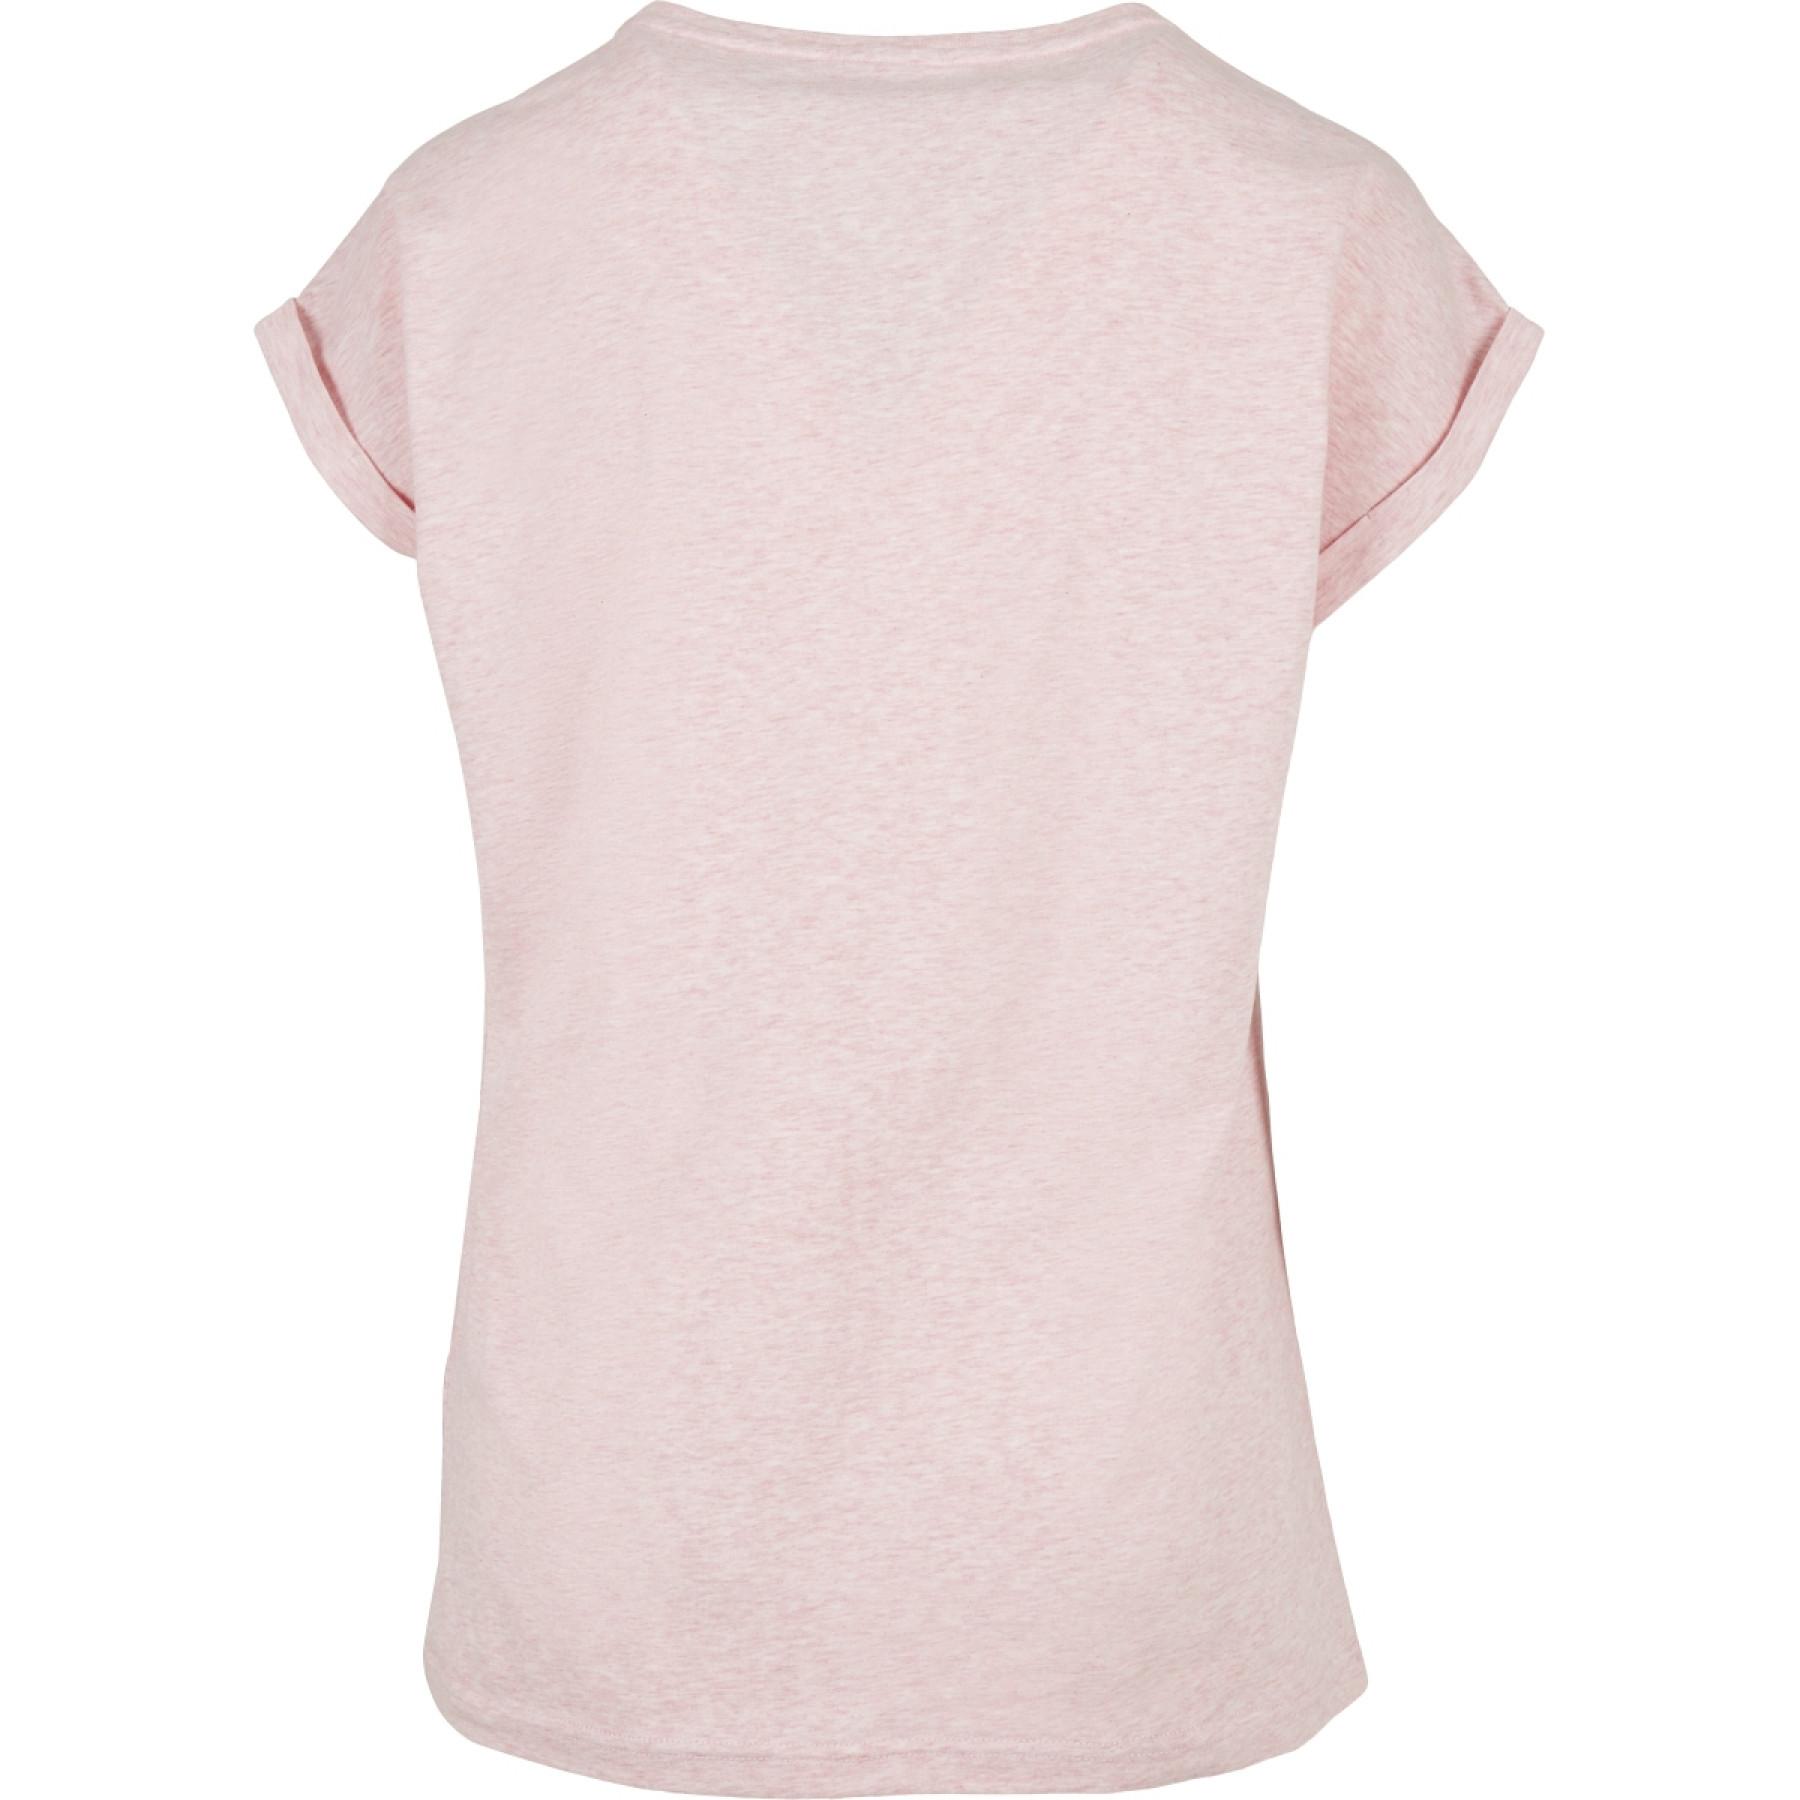 T-shirt femme Urban Classics color melange extended shoulder